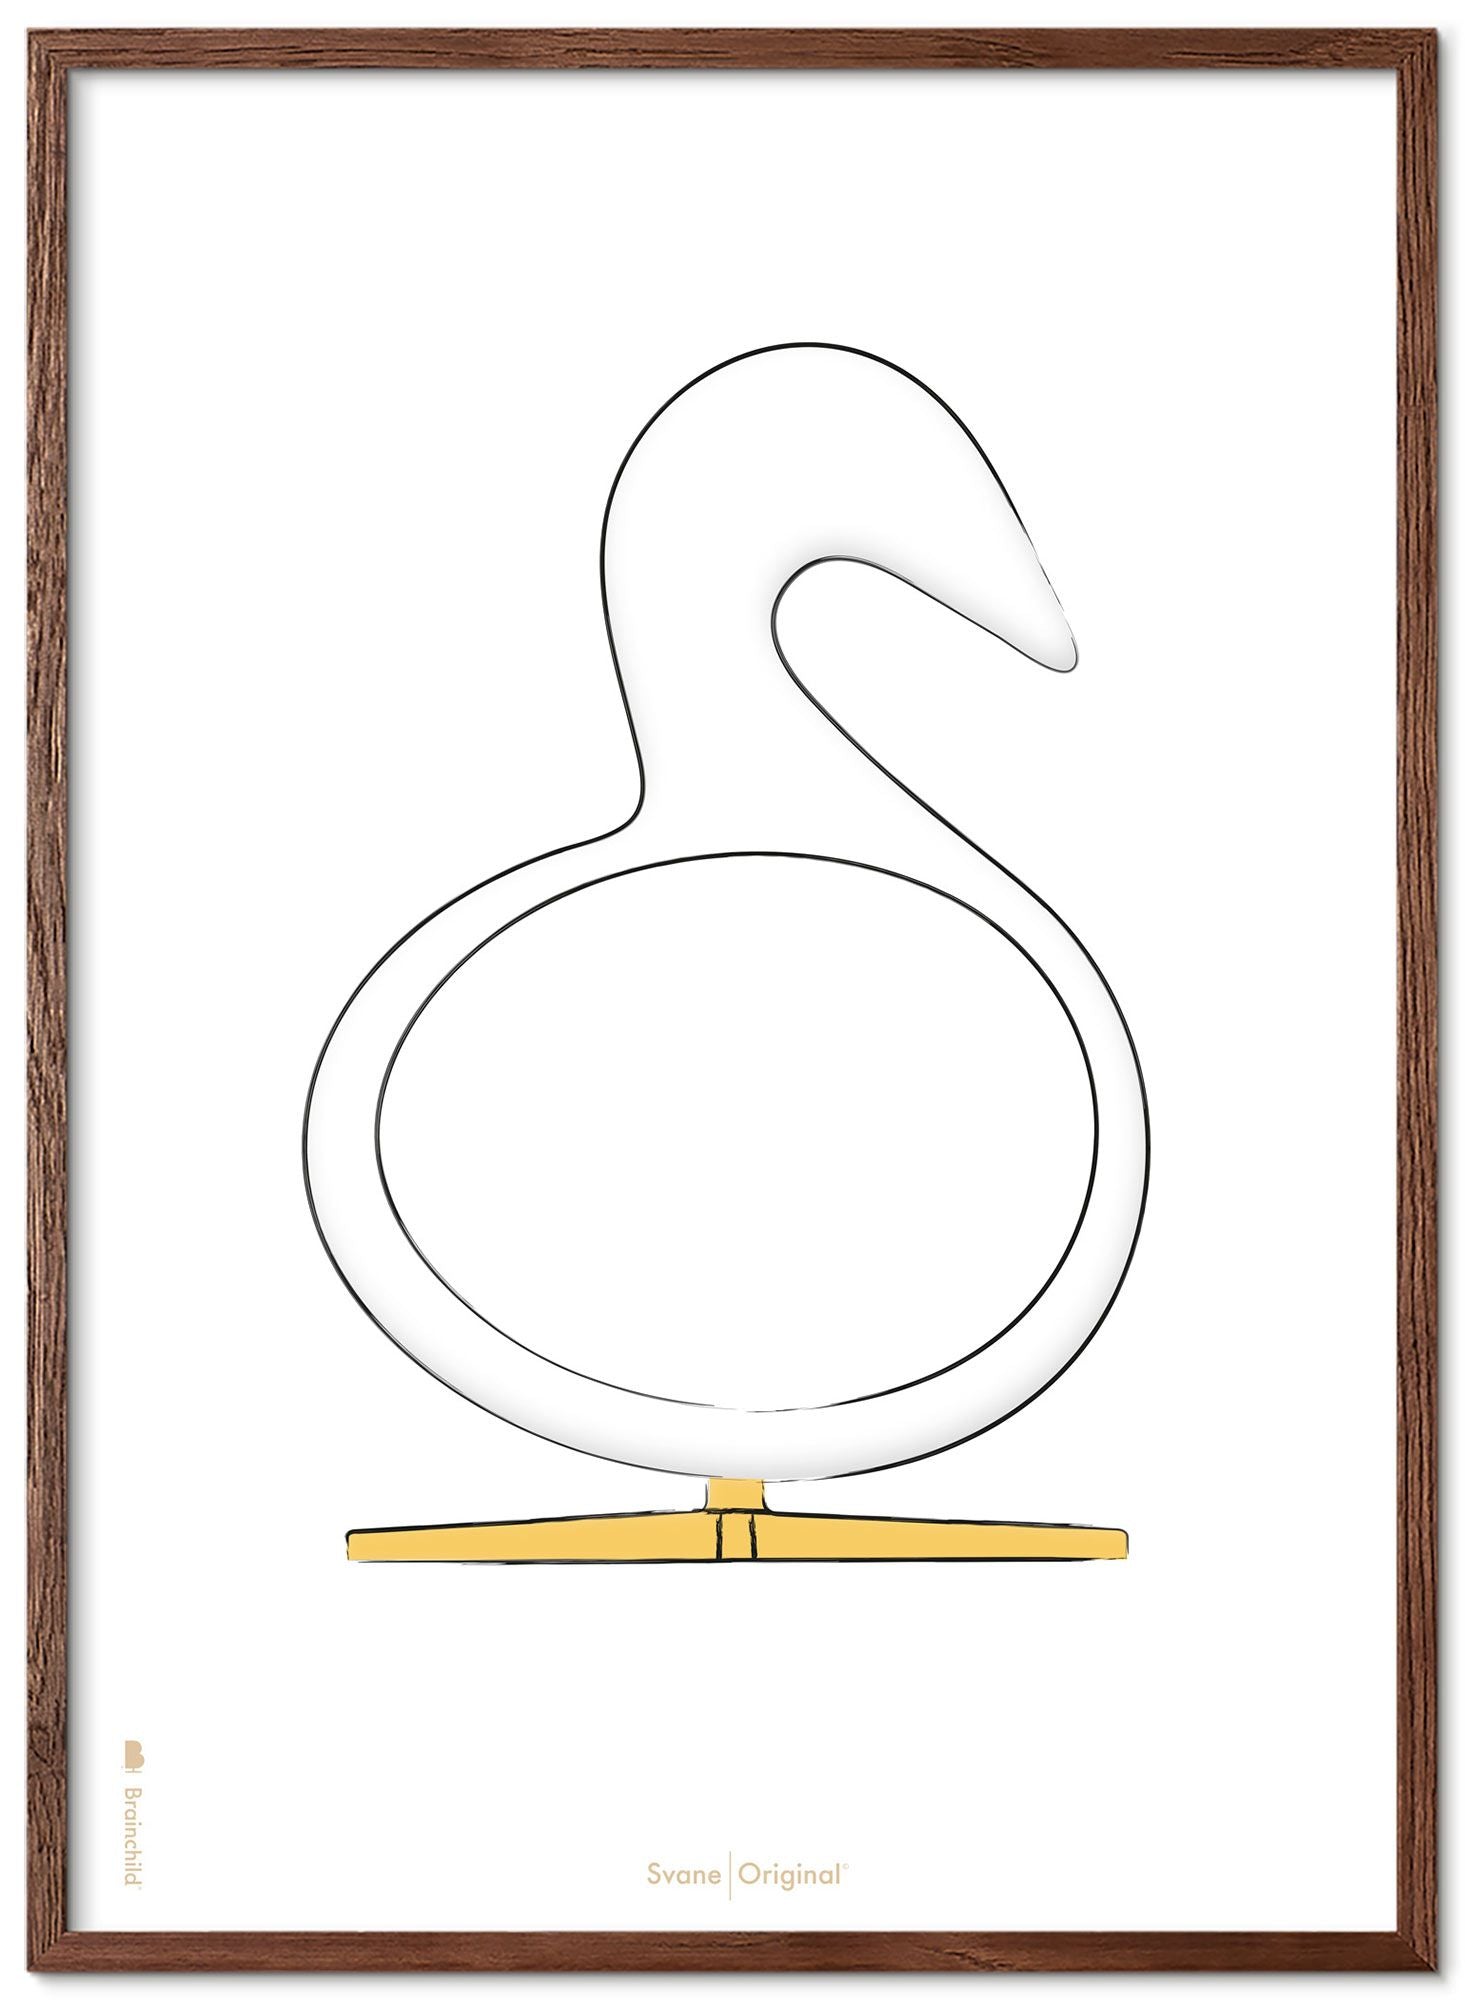 Brainchild Swan Design Sketch Poster Rahmen Aus Dunklem Holz 30x40 Cm, Weißer Hintergrund